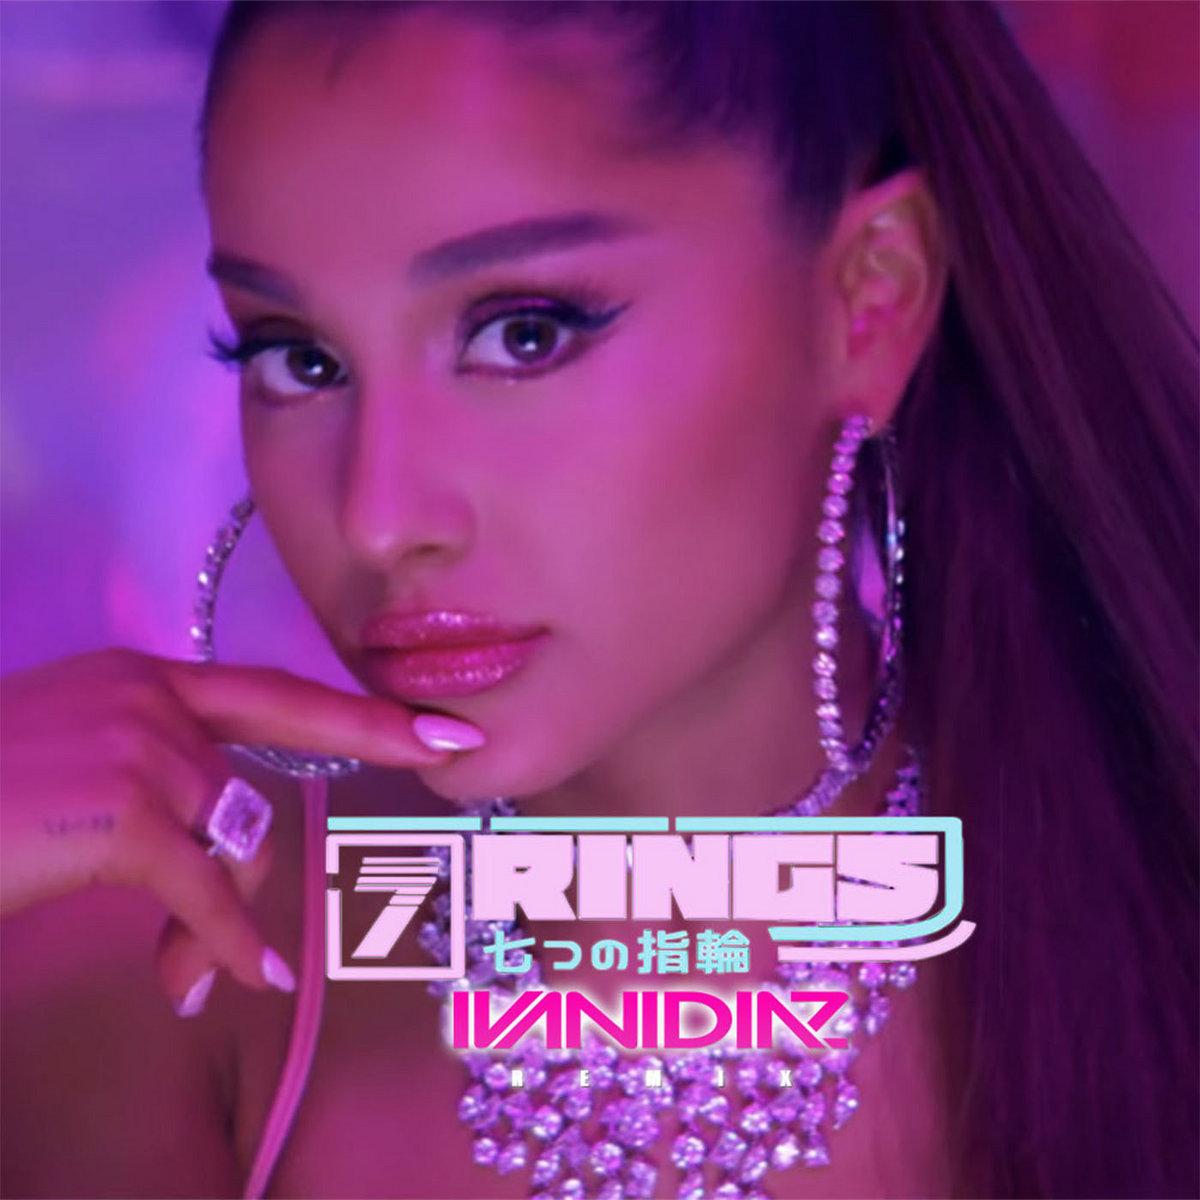 7 rings - Ariana Grande (Ivan Diaz Remix) | Ivan Diaz, Ariana Grande | Ivan  Diaz